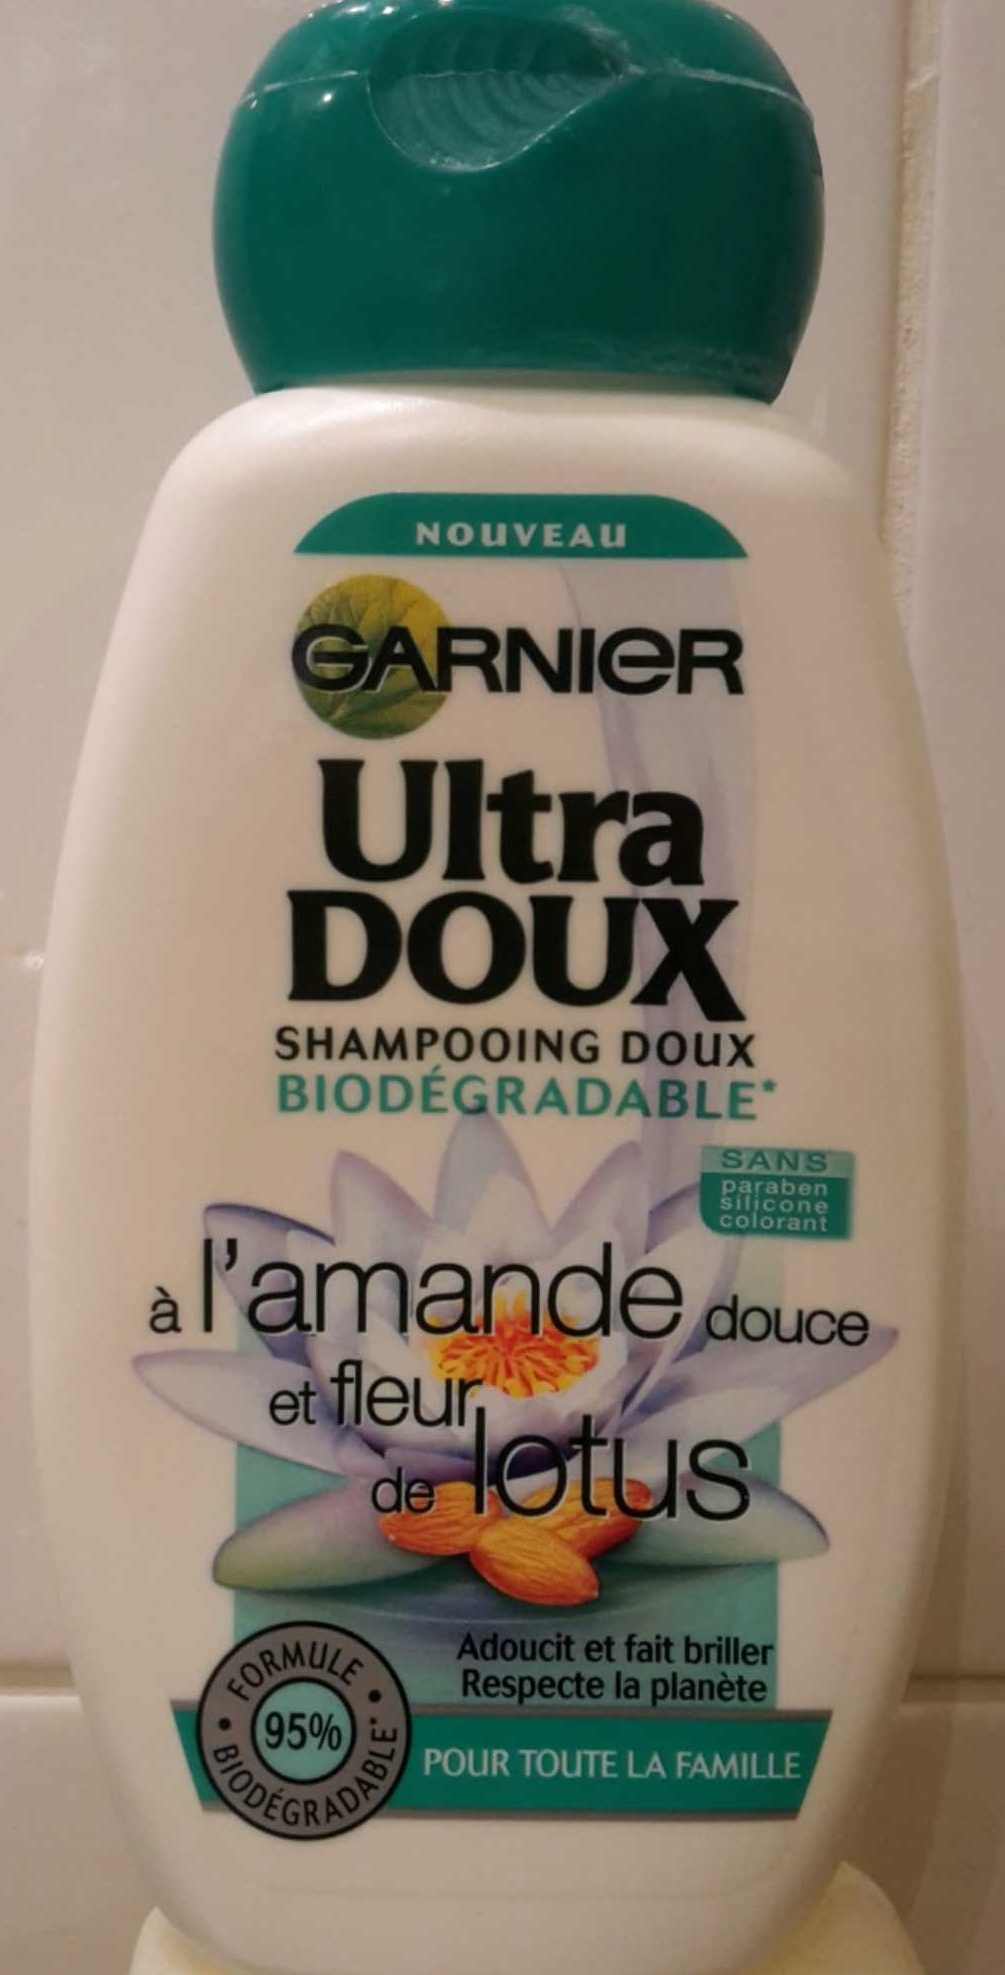 Ultra Doux Shampooing doux biodégradable à l'amande douce et fleur de lotus - Produit - fr